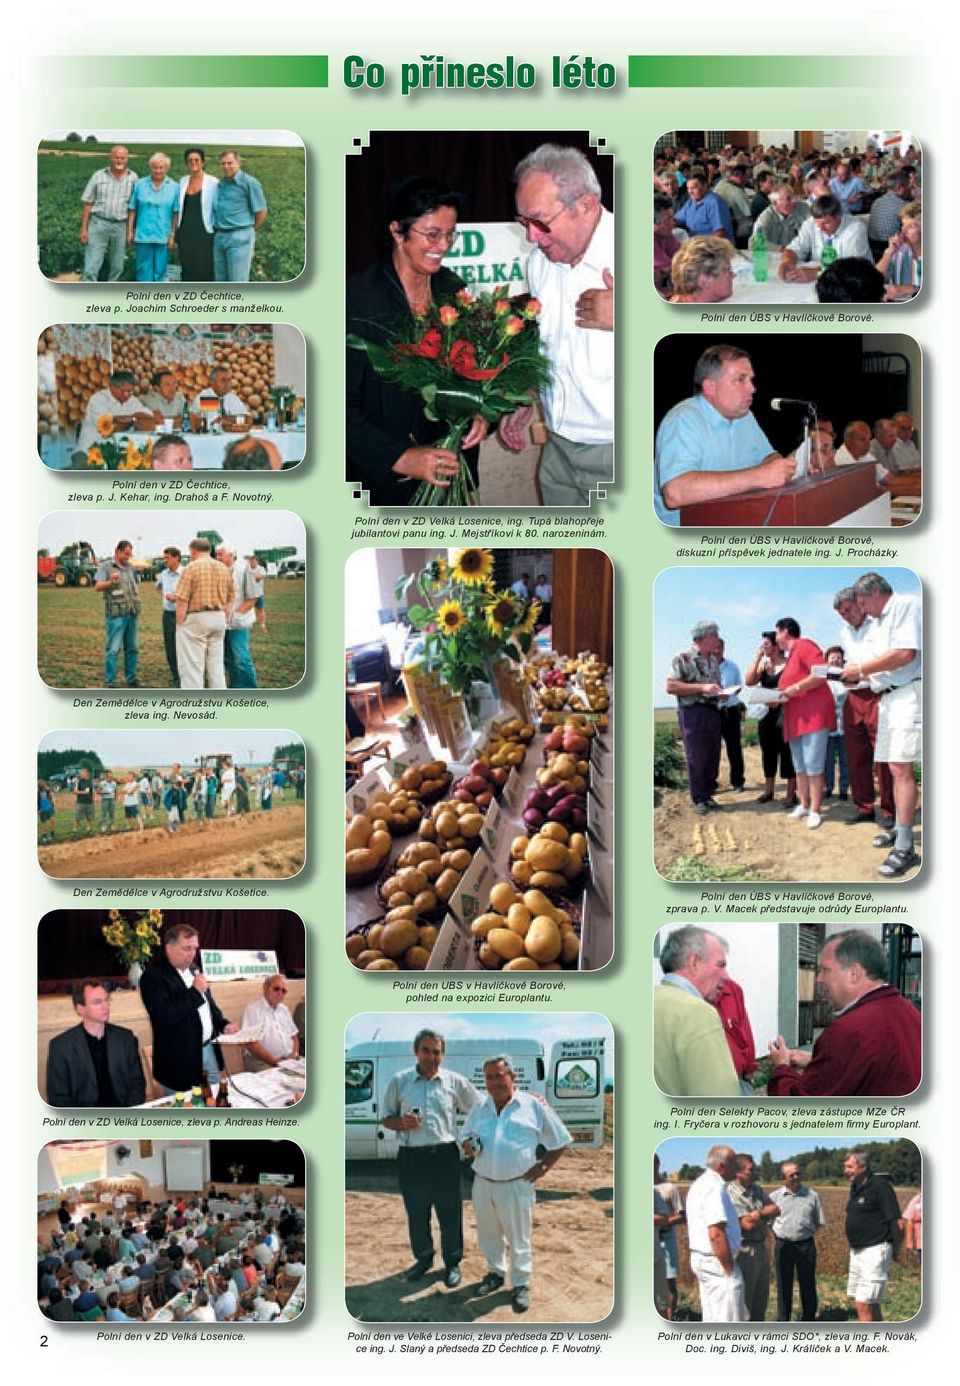 Den Zemědělce v Agrodružstvu Košetice, zleva ing. Nevosád. Den Zemědělce v Agrodružstvu Košetice. Polní den ÚBS v Havlíčkově Borové, zprava p. V. Macek představuje odrůdy Europlantu.